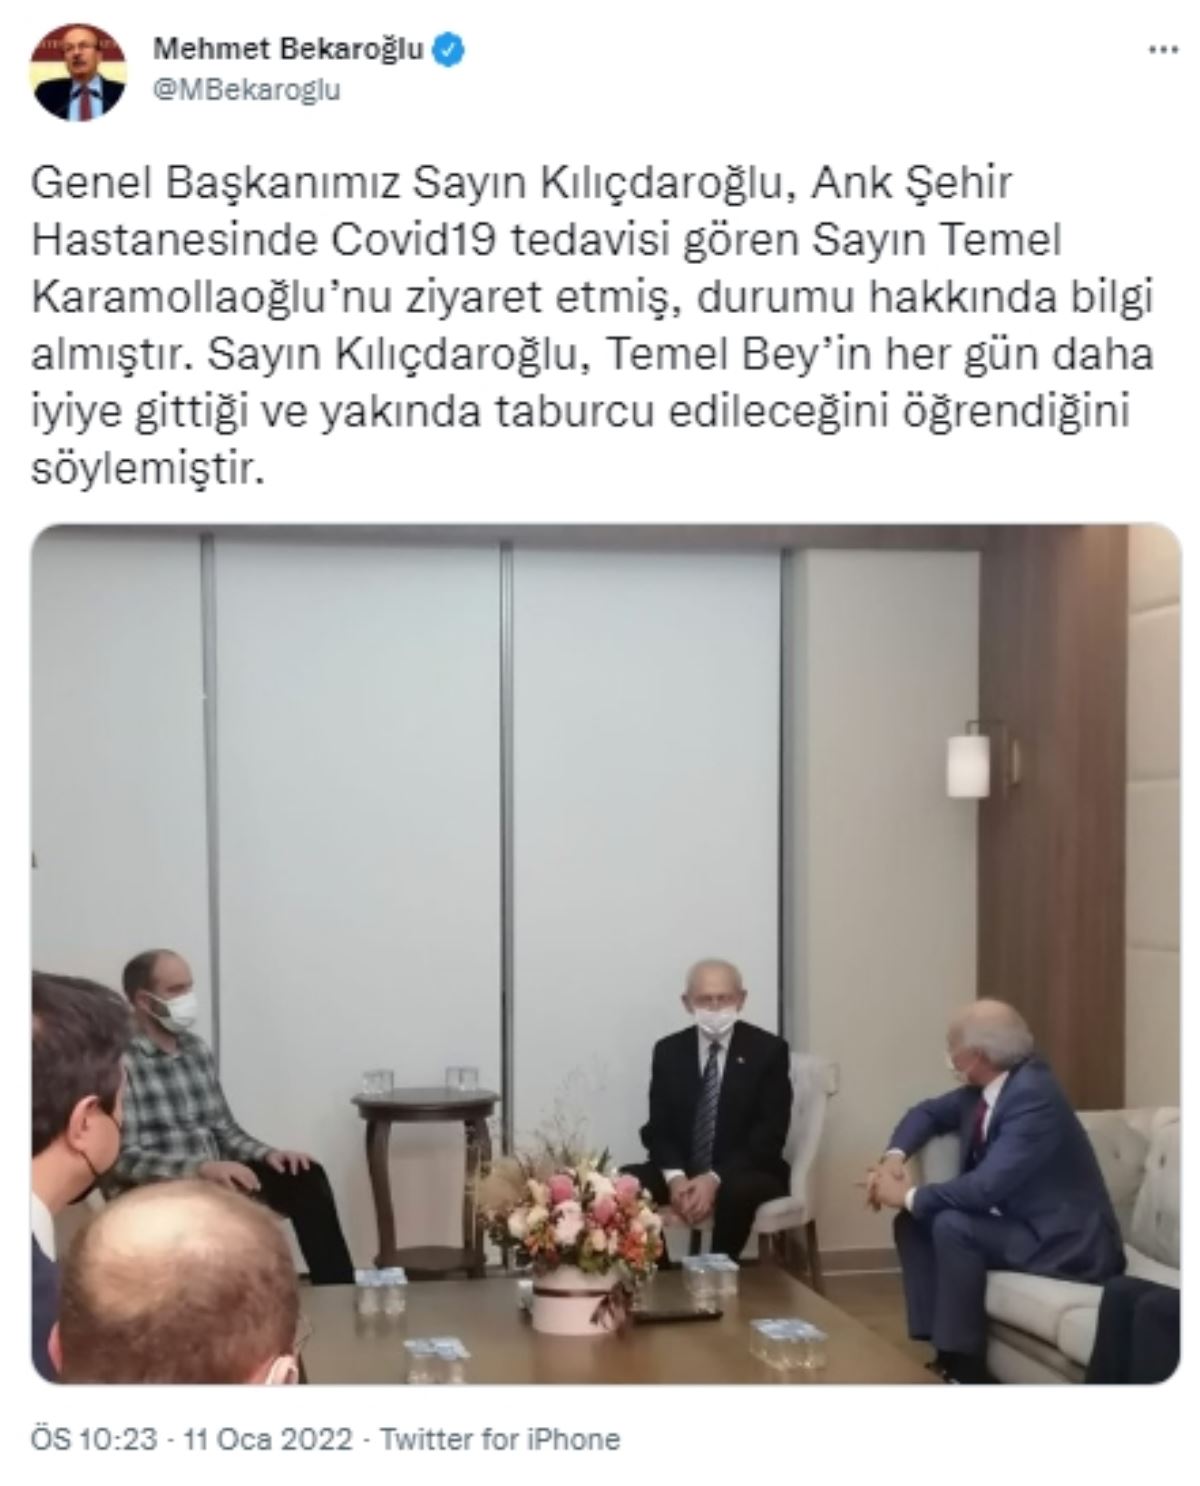 Kılıçdaroğlu, Karamollaoğlu'nun sağlık durumu hakkında bilgi aldı